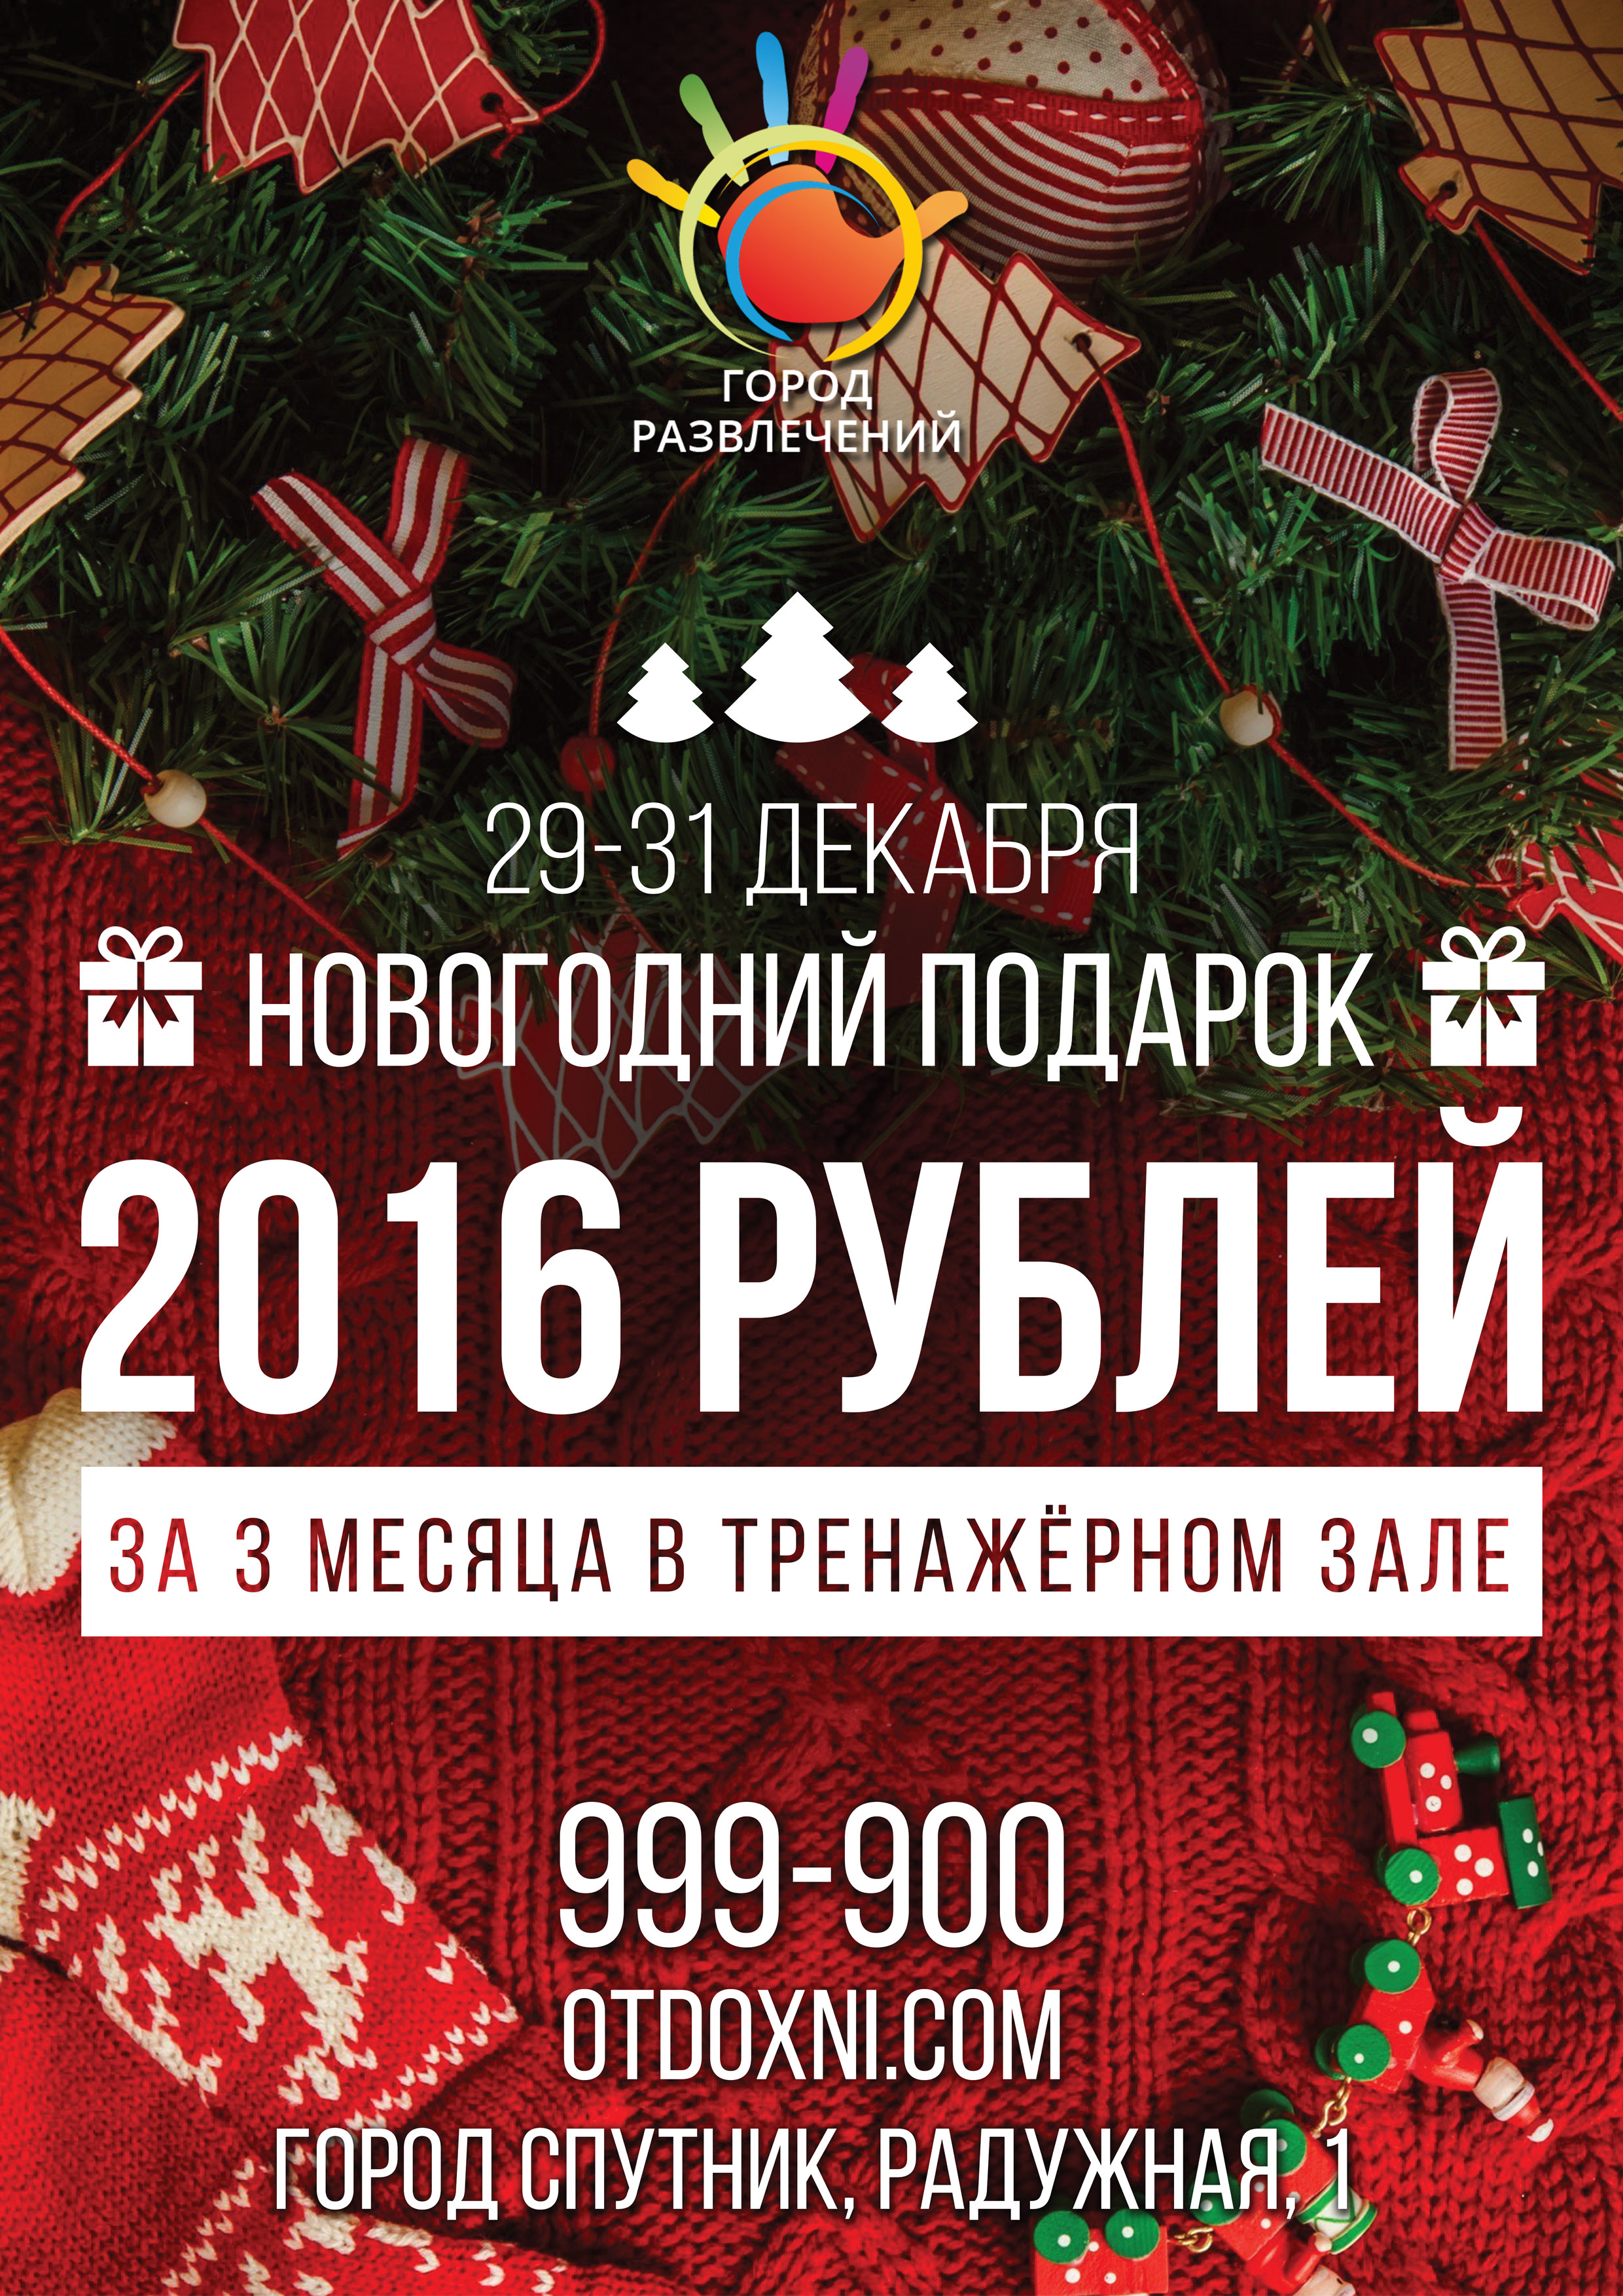 Абонемент в тренажерный зал всего за 2016 рублей